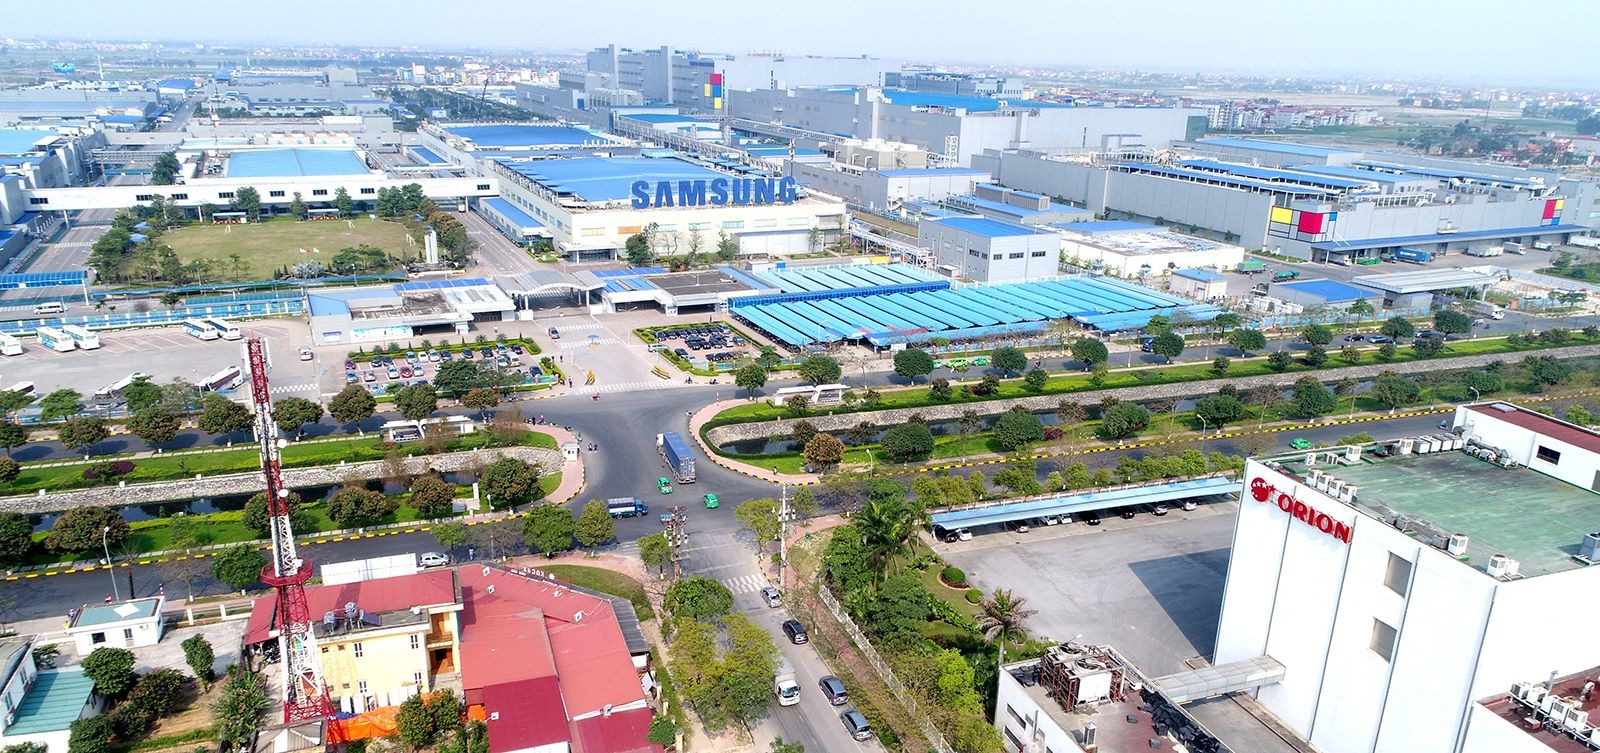 
Bắc Ninh là một trong những tỉnh có nền công nghiệp phát triển nhất cả nước với nhiều doanh nghiệp lớn như Samsung, Orion...
